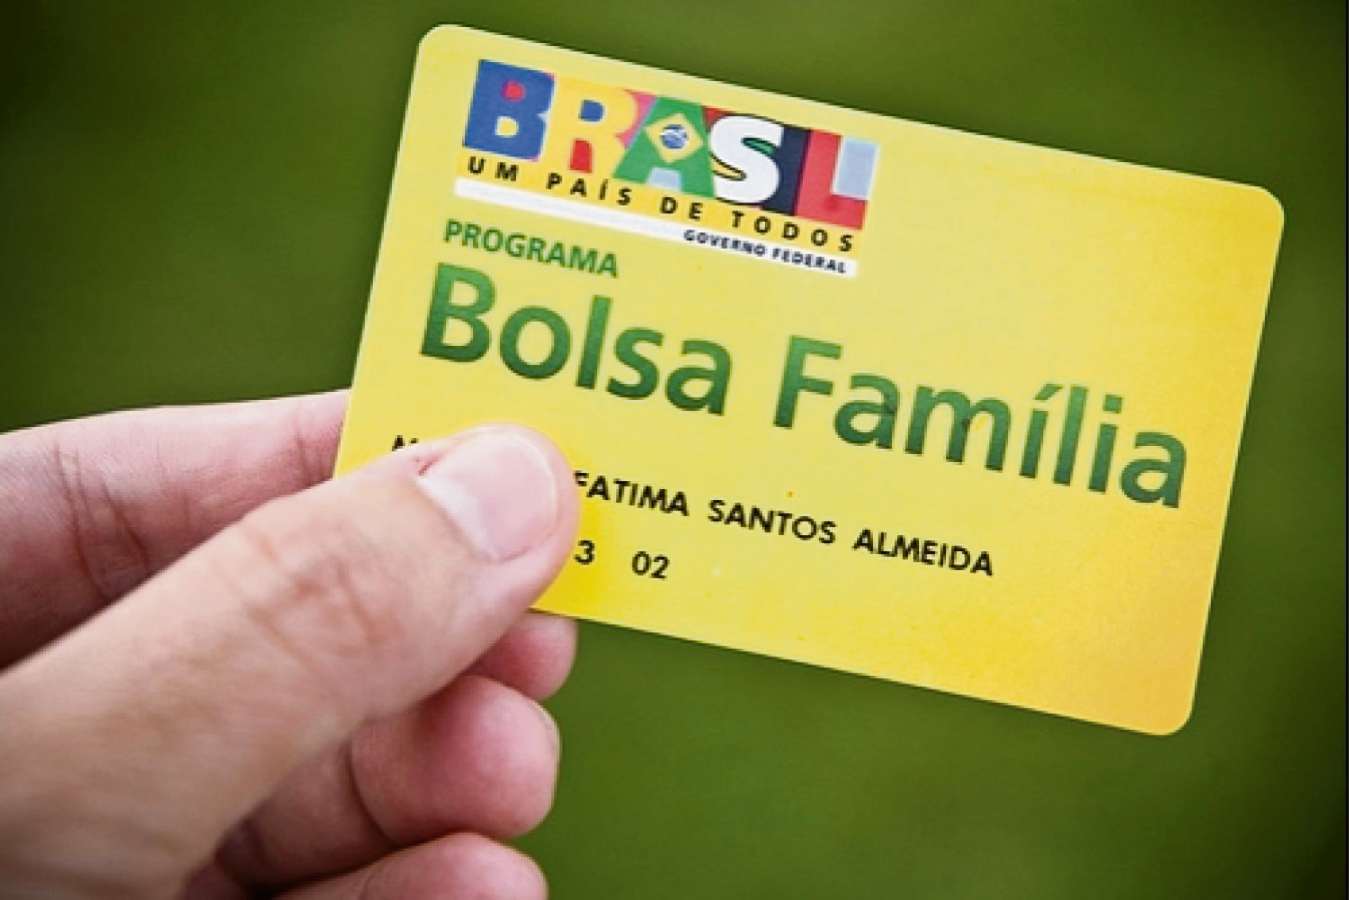 BOLSA FAMÍLIA – Divulgada lista dos novos beneficiários | TVdopovo